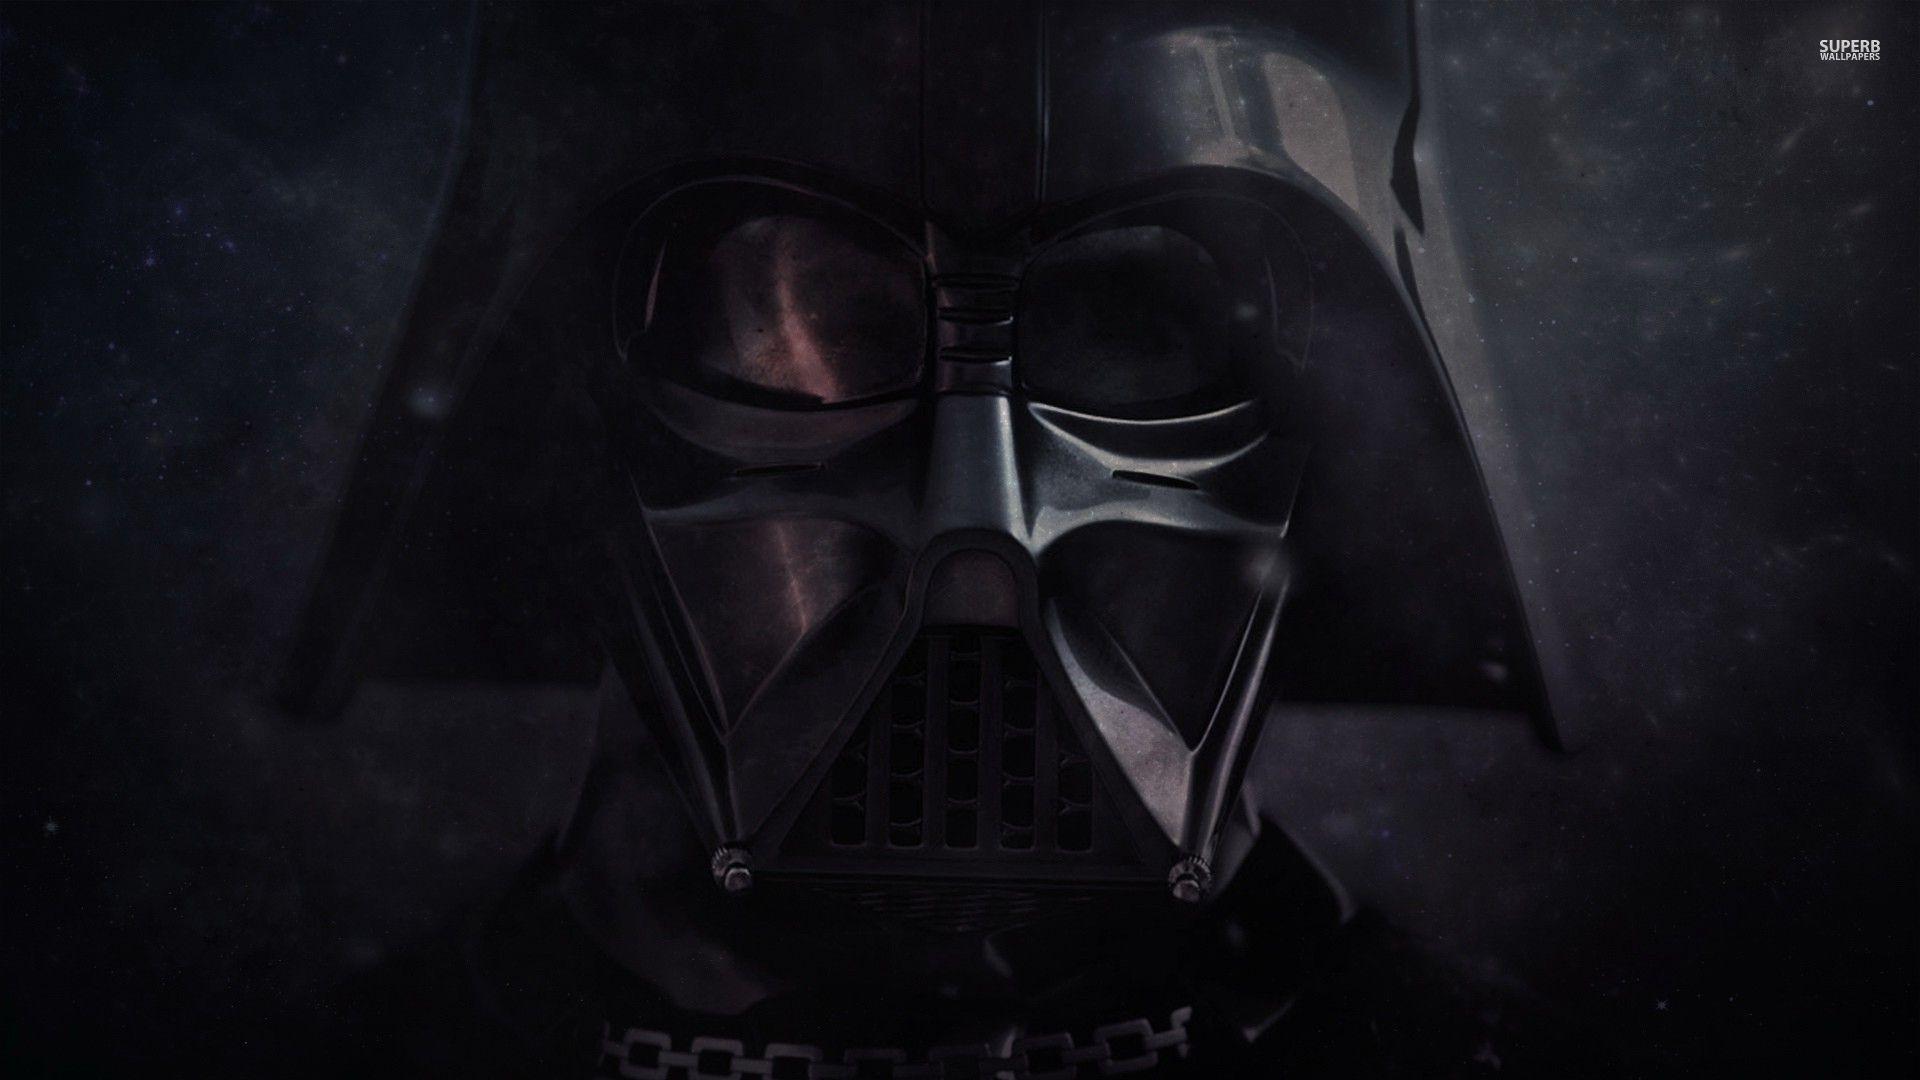 Darth Vader Wallpaper, Top Darth Vader HQ Image, Darth Vader WD 99